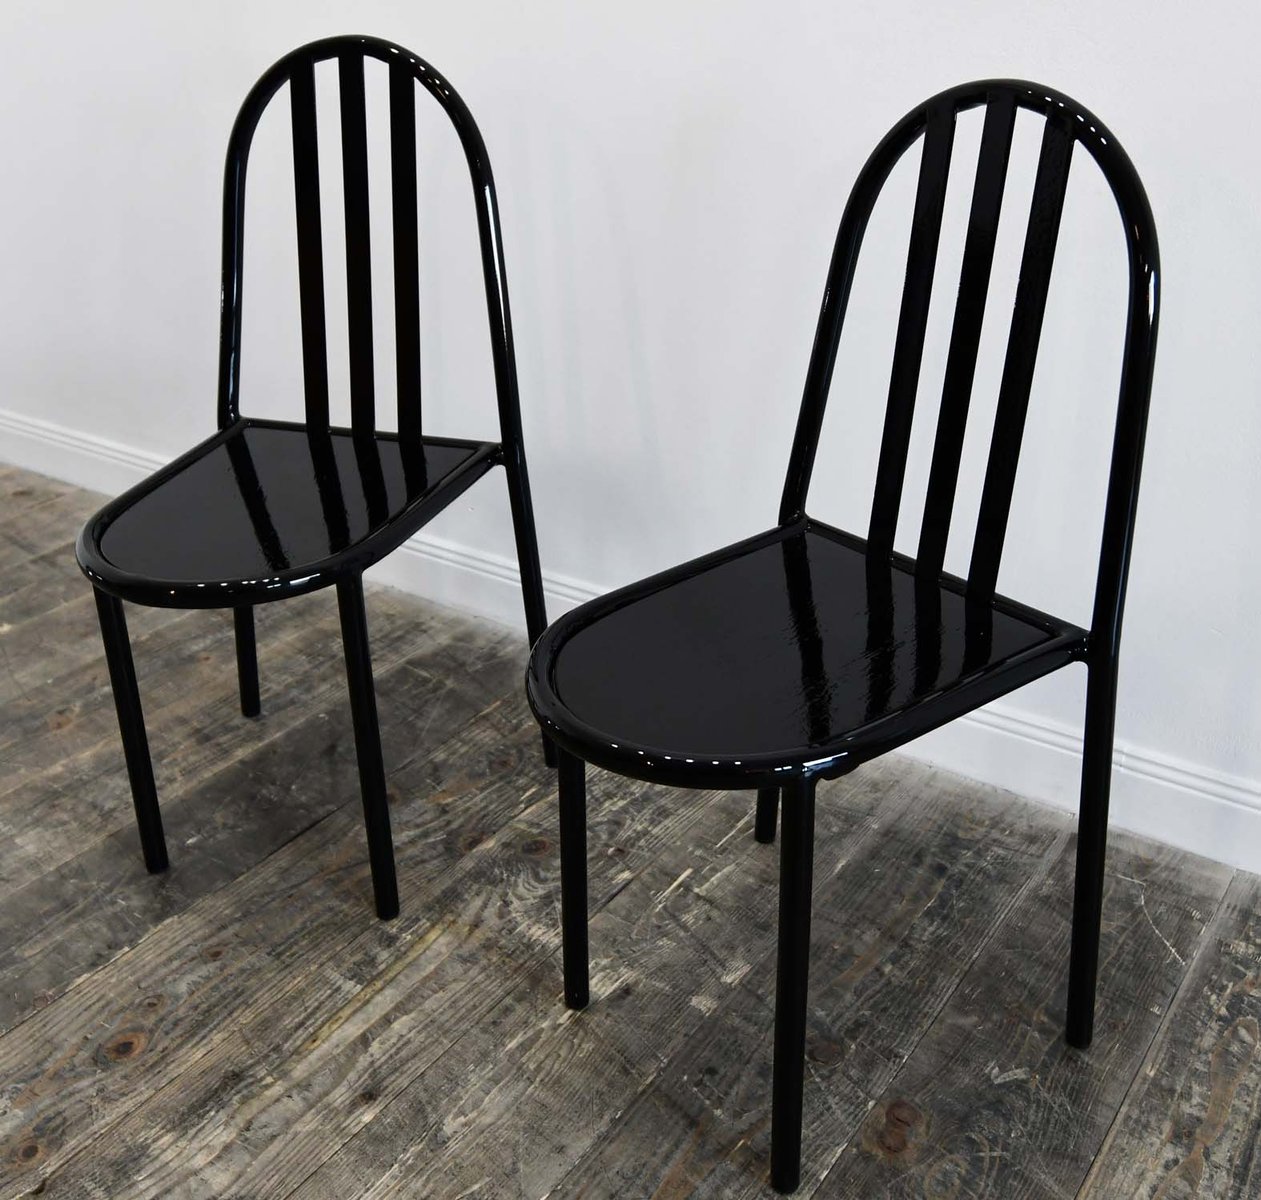 chairs by robert mallet stevens set of 2 GU-1003426